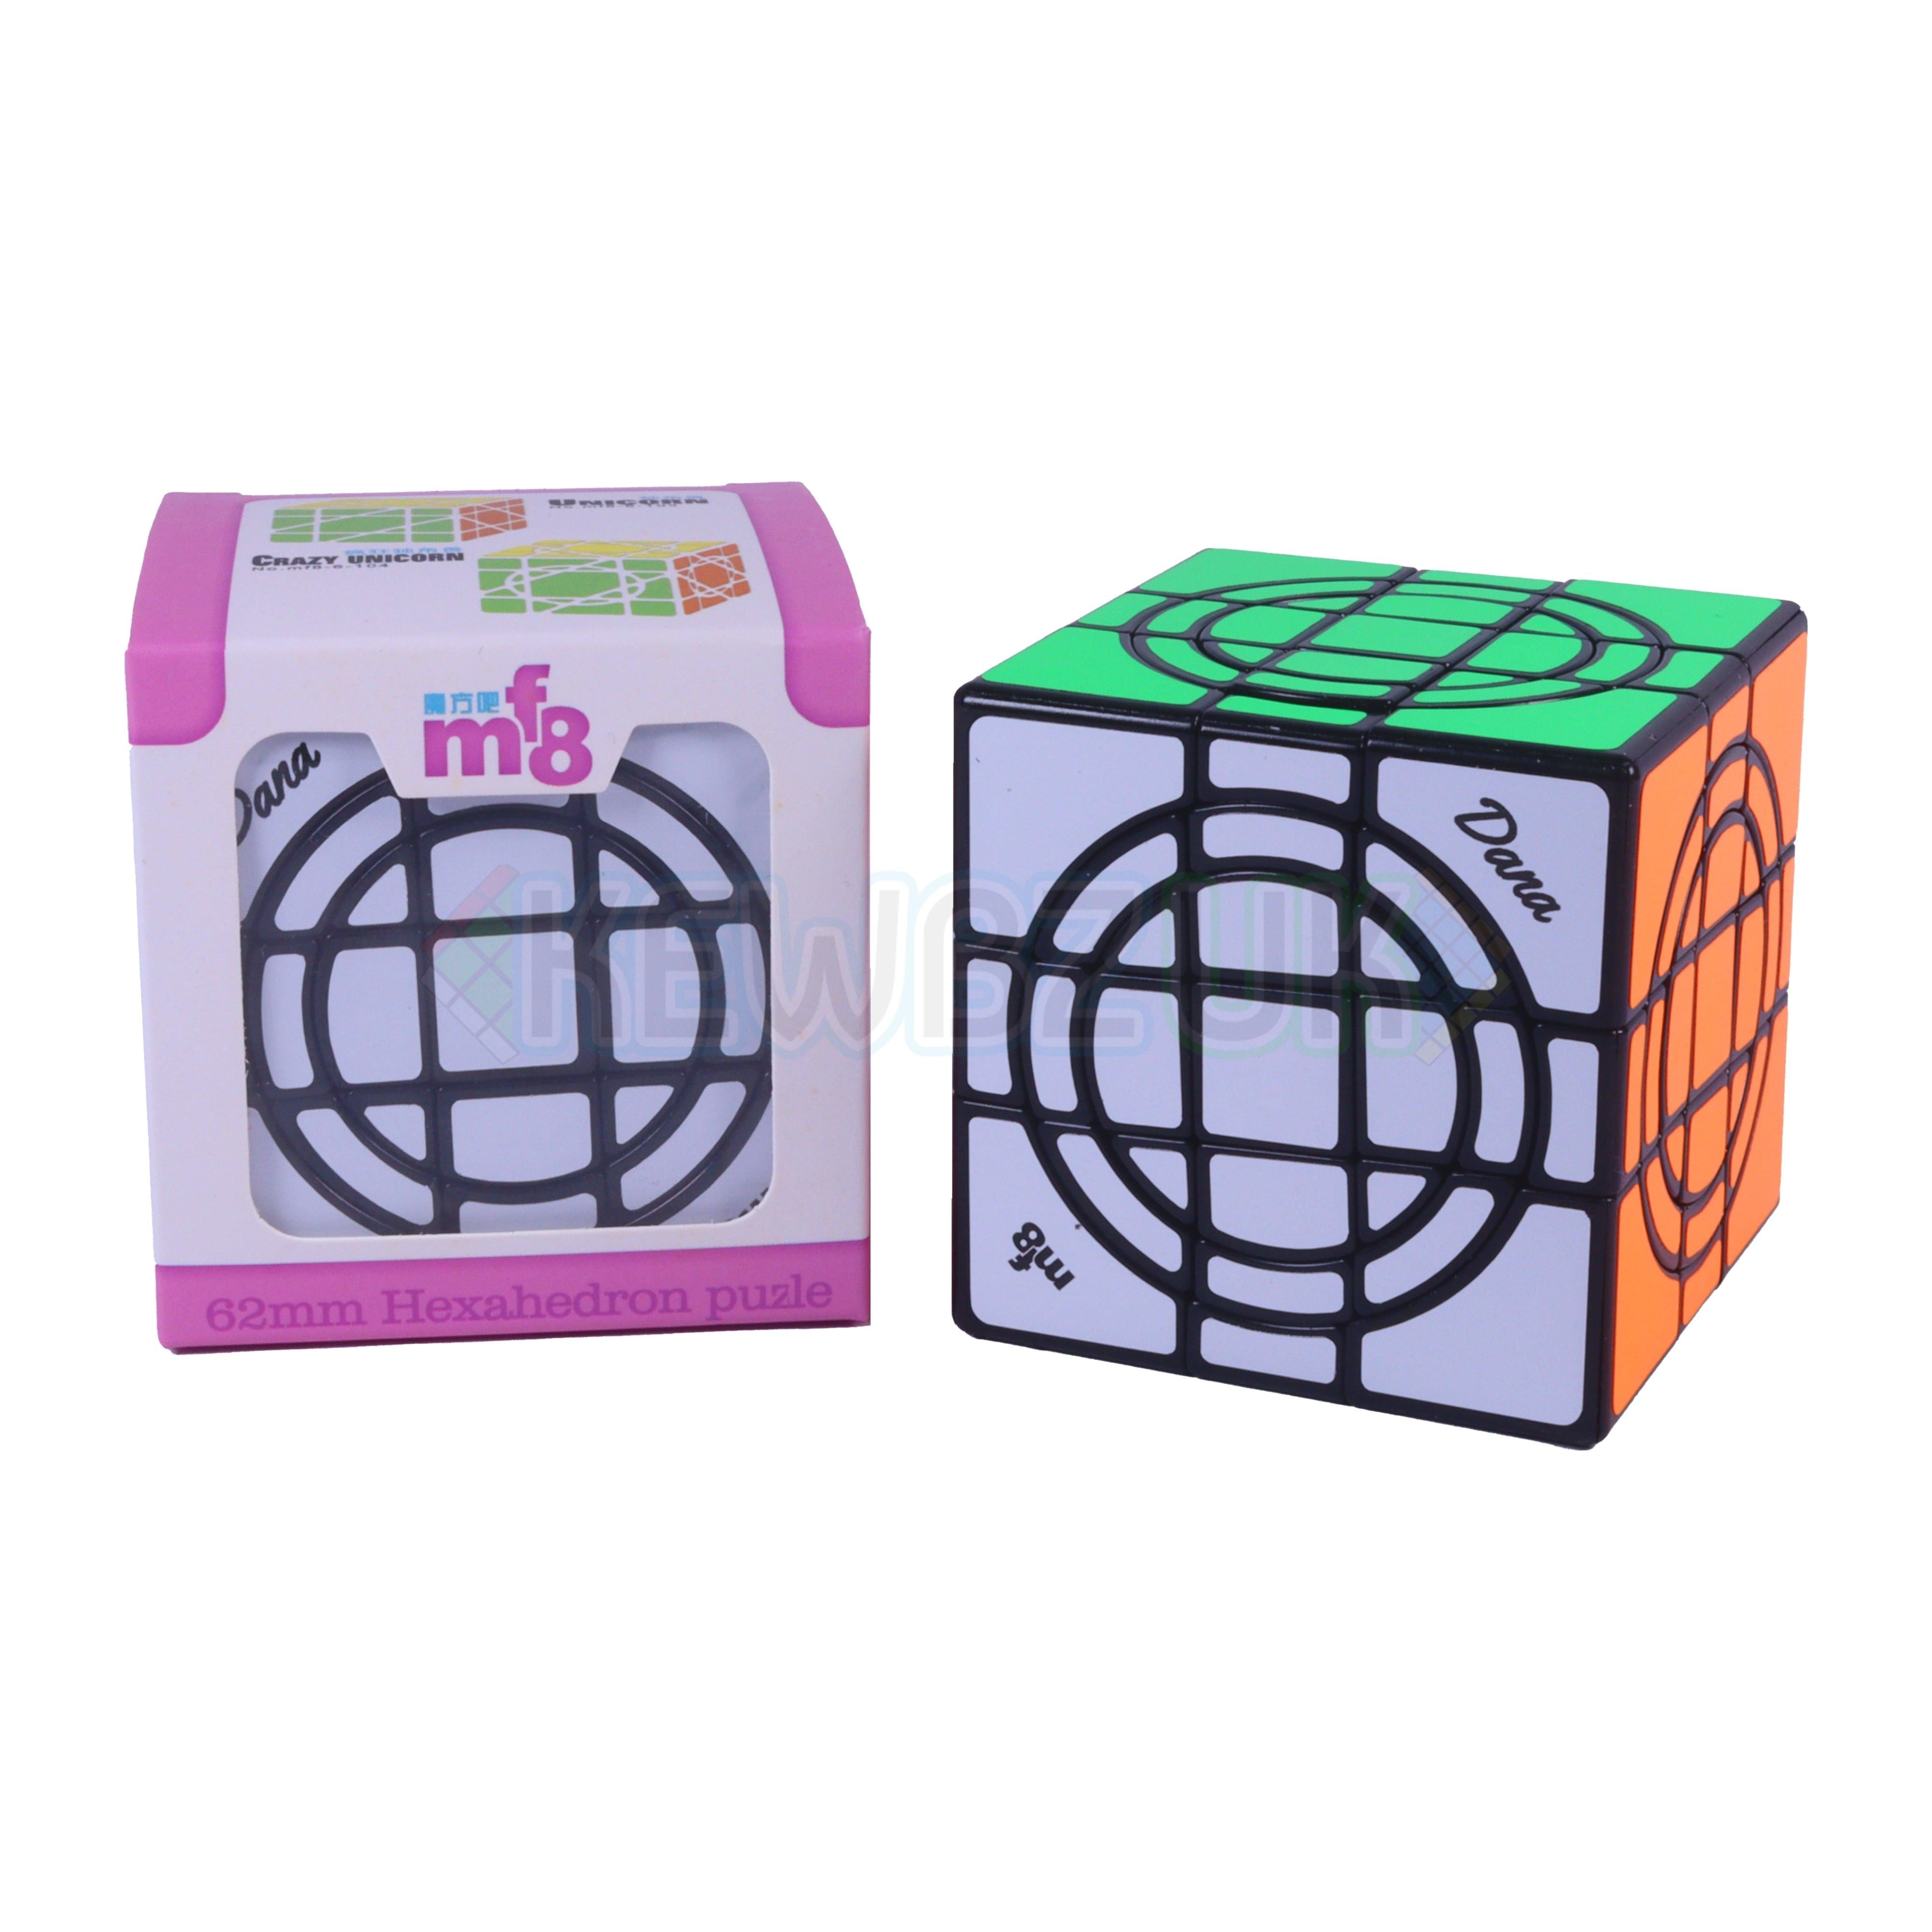 mf8 Double Crazy Cube